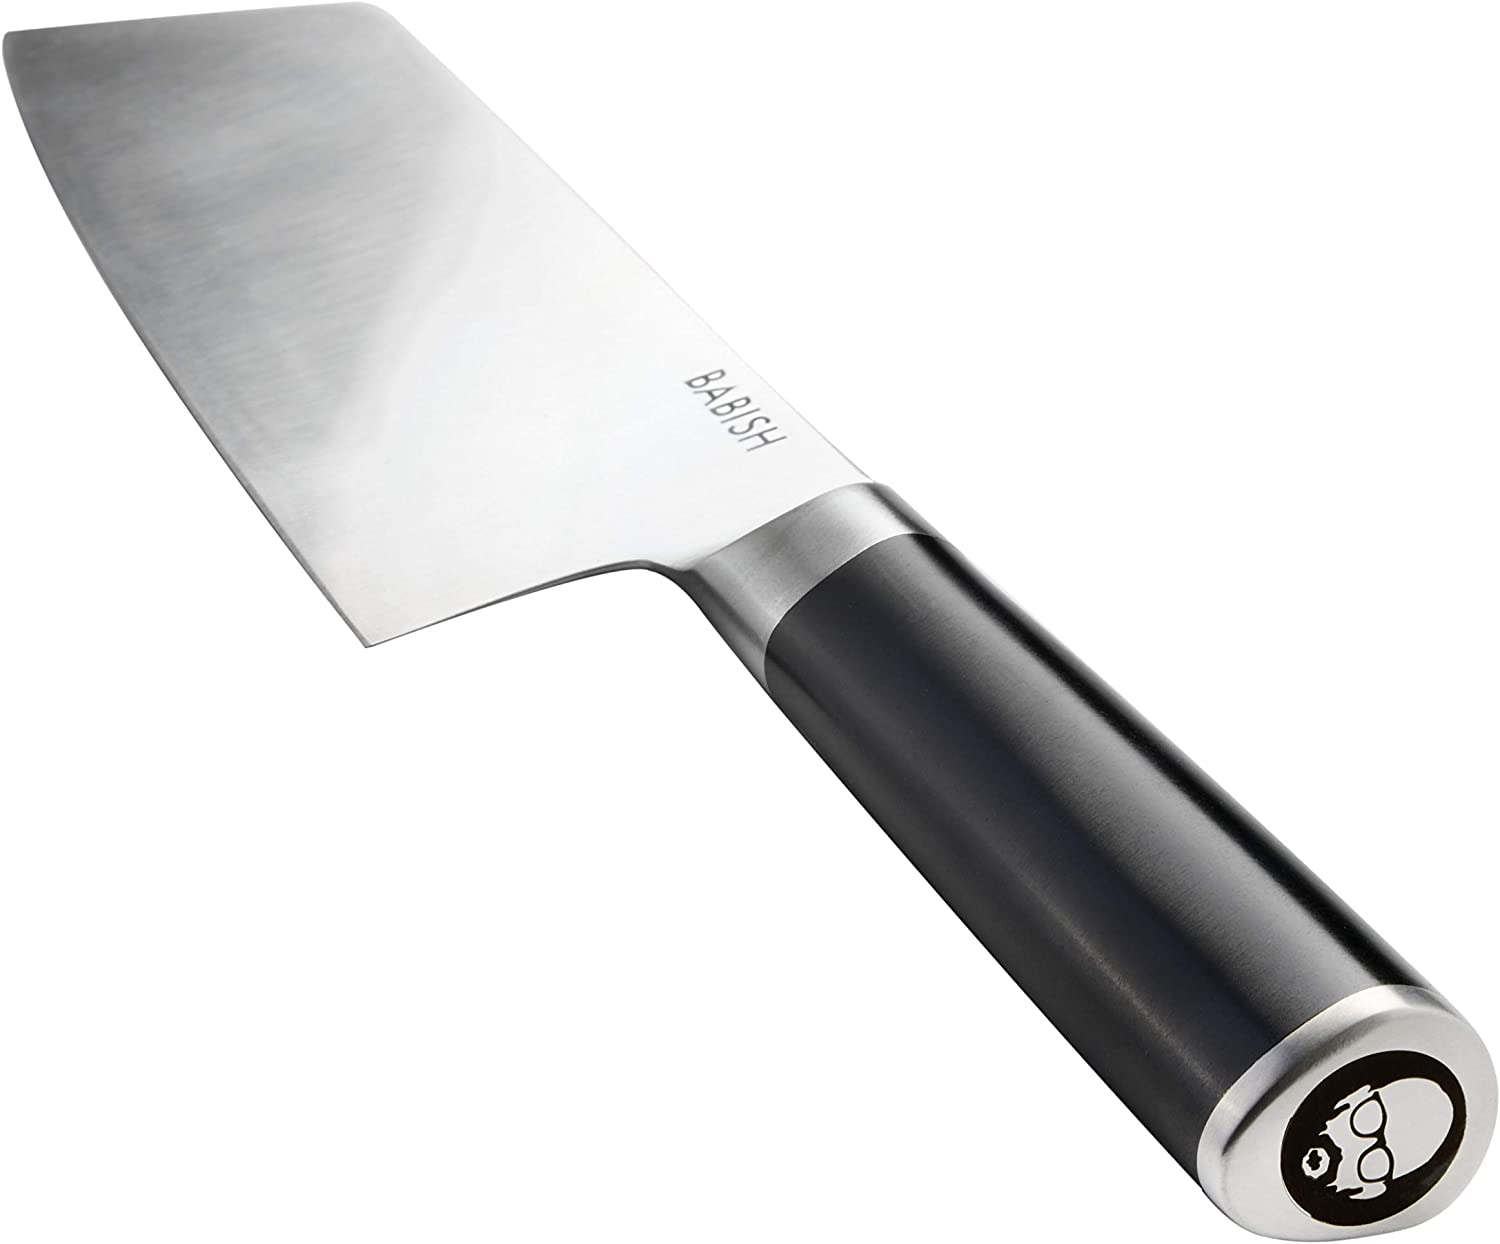 Babish 6.5 German Steel Cutlery Santoku Knife NEW